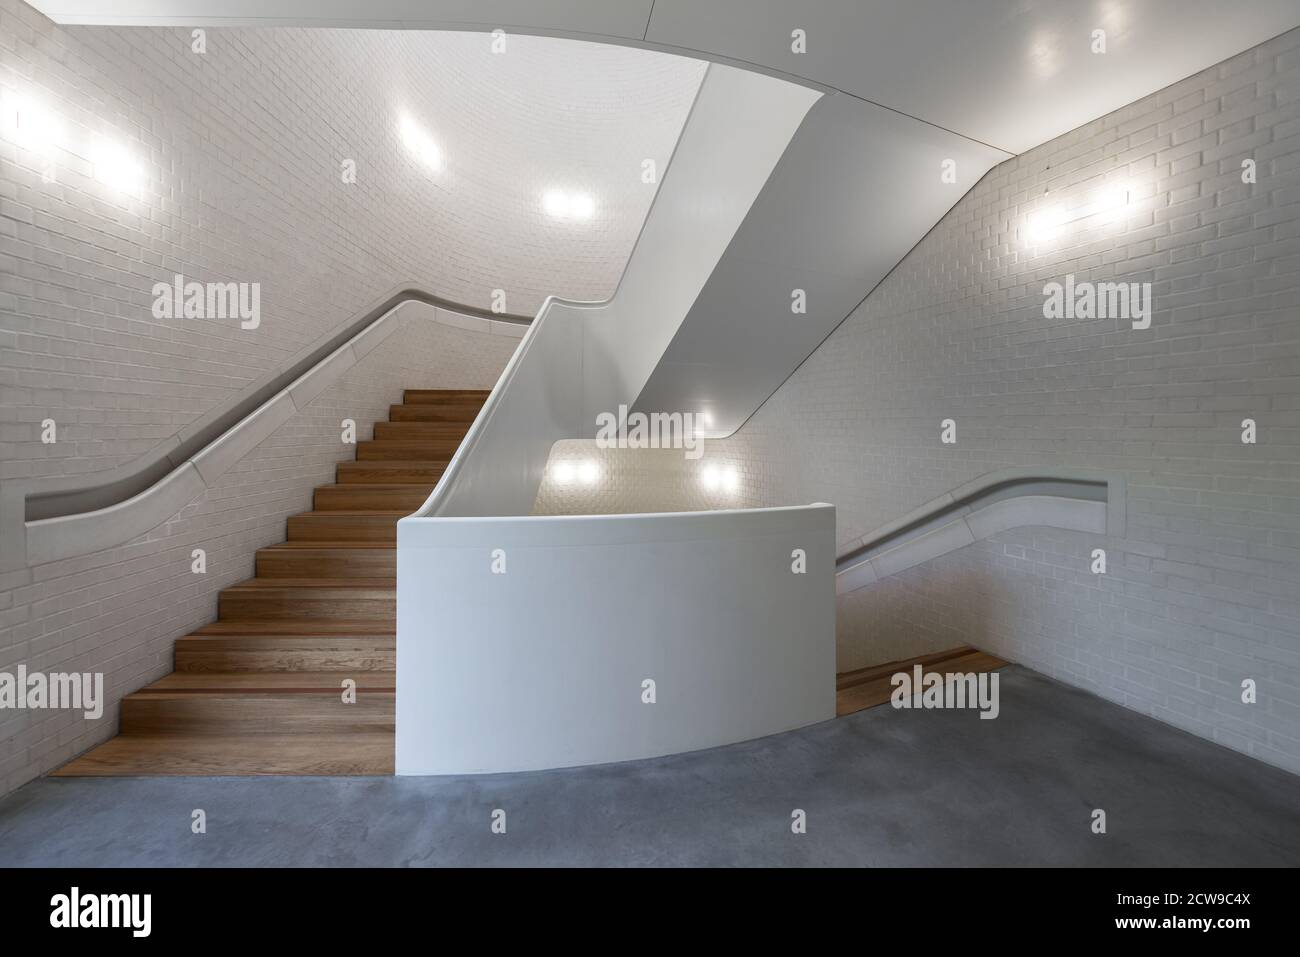 Escalera de caracol blanca en la Newport Street Gallery, Londres, Reino Unido Foto de stock